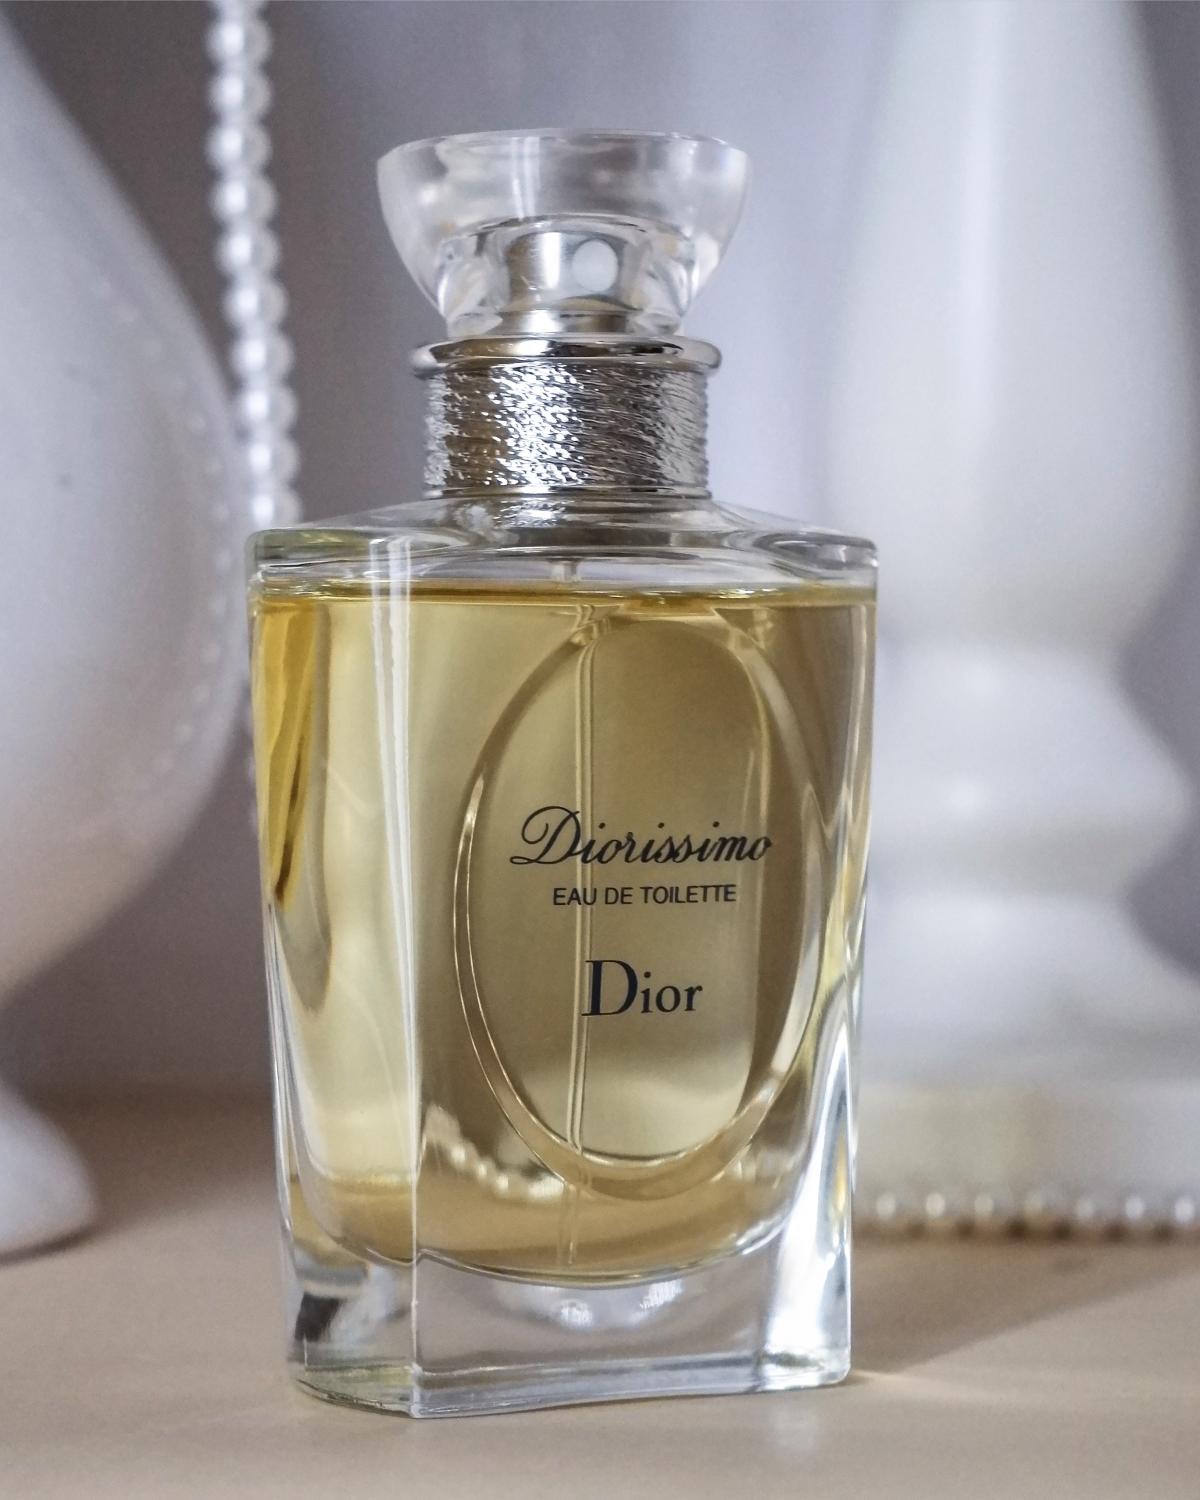 Les Creations de Monsieur Dior Diorissimo Eau de Toilette Christian